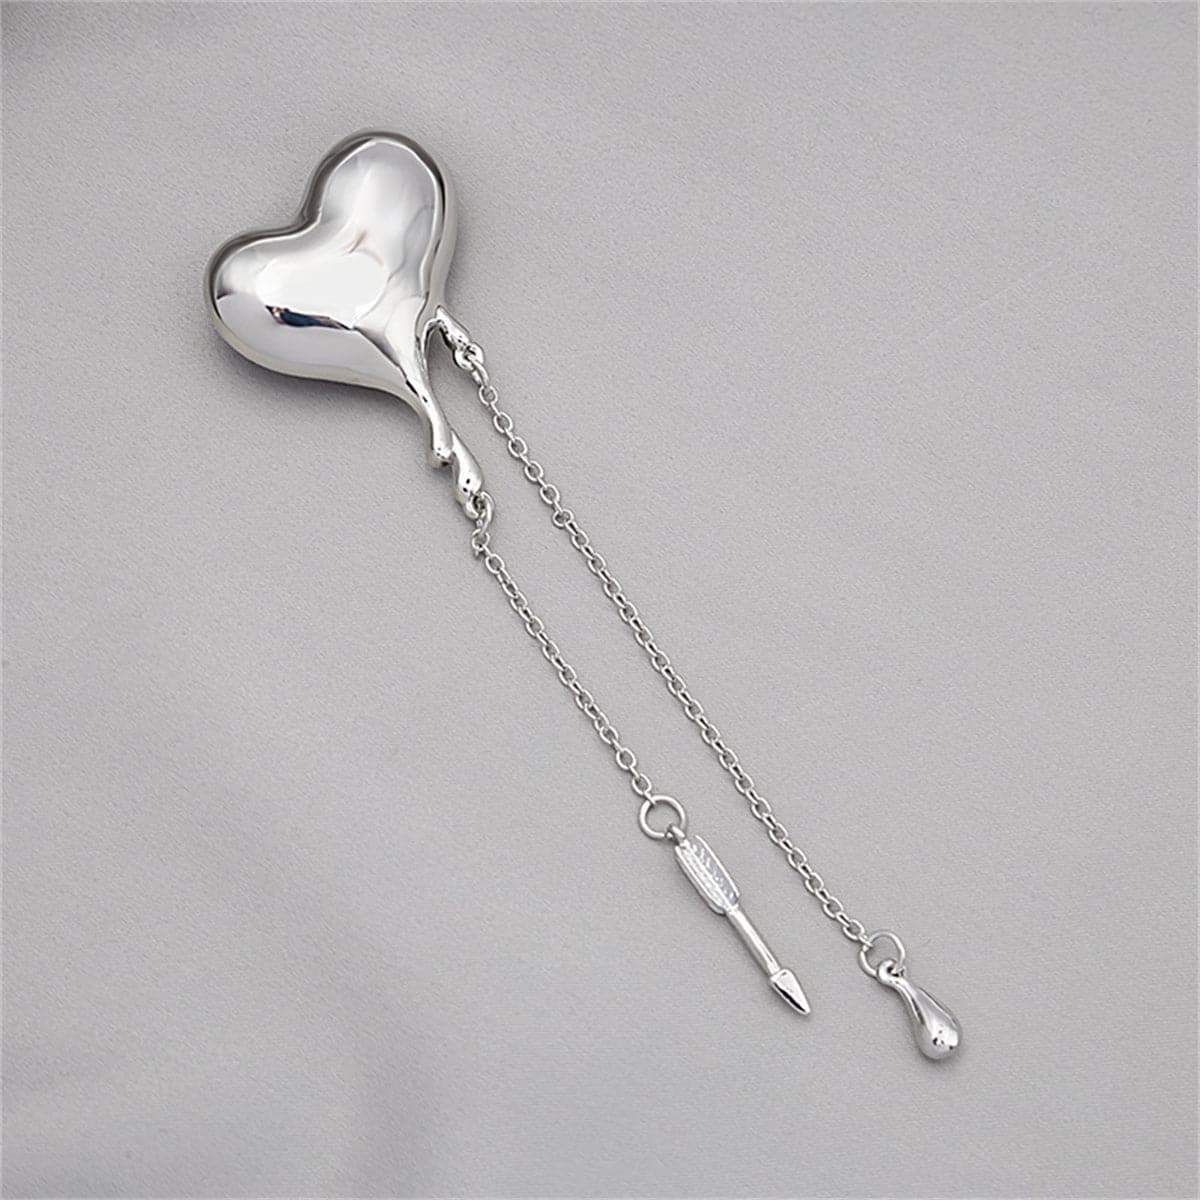 Silver-Plated Heart & Arrow Tassel Brooch